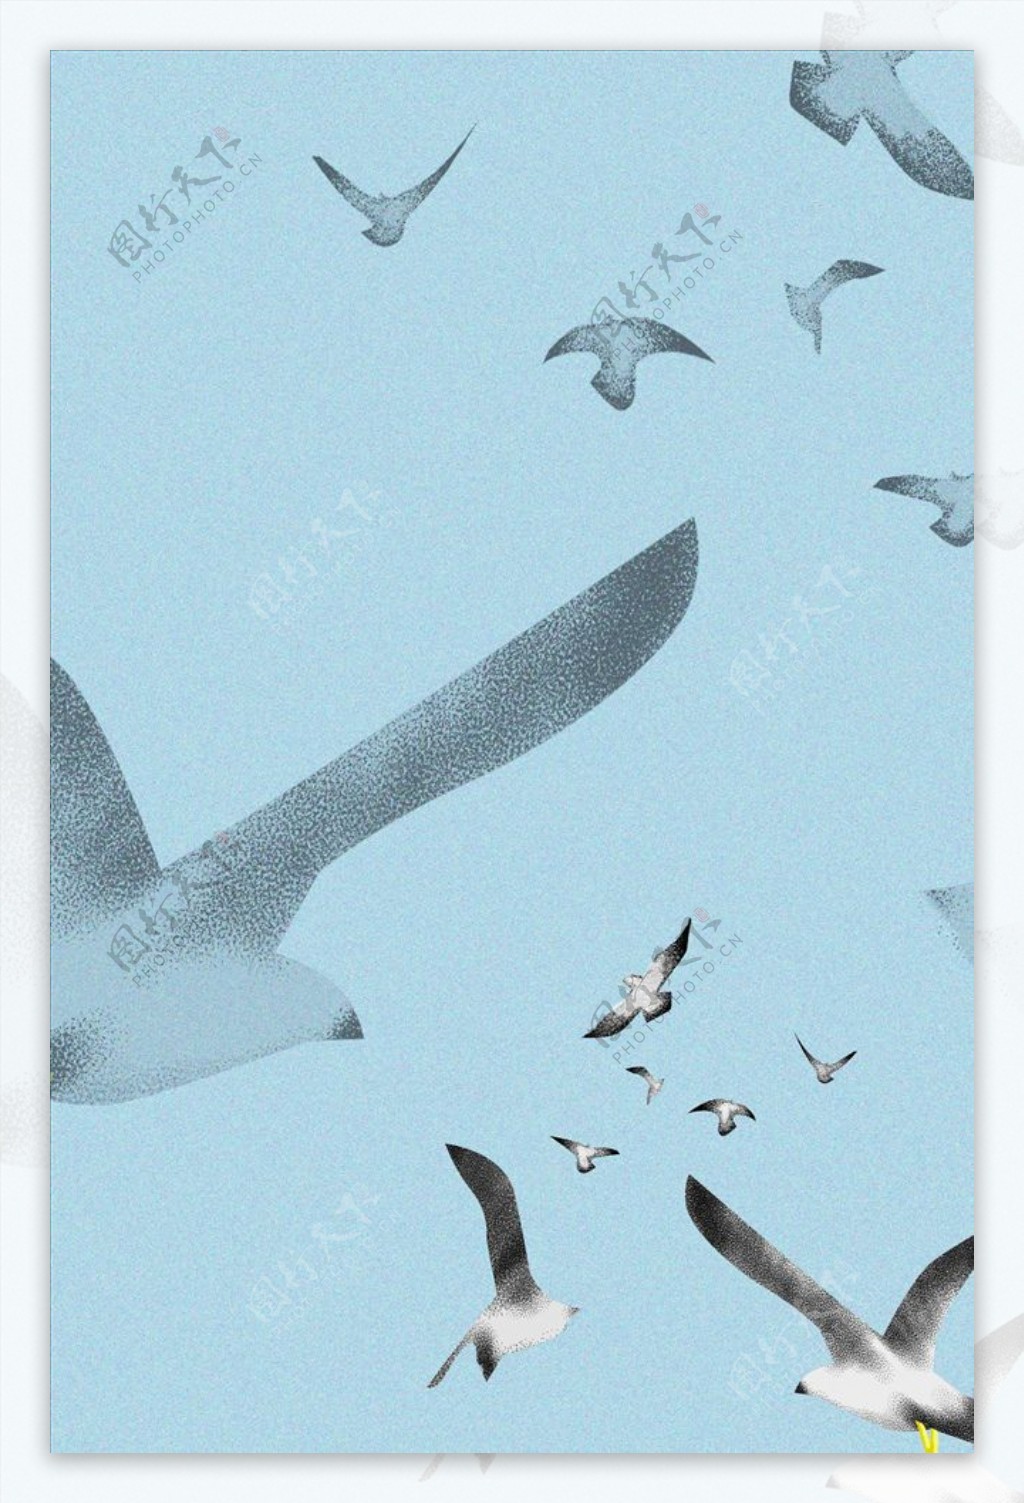 飞翔的海鸥手绘插画风景配图